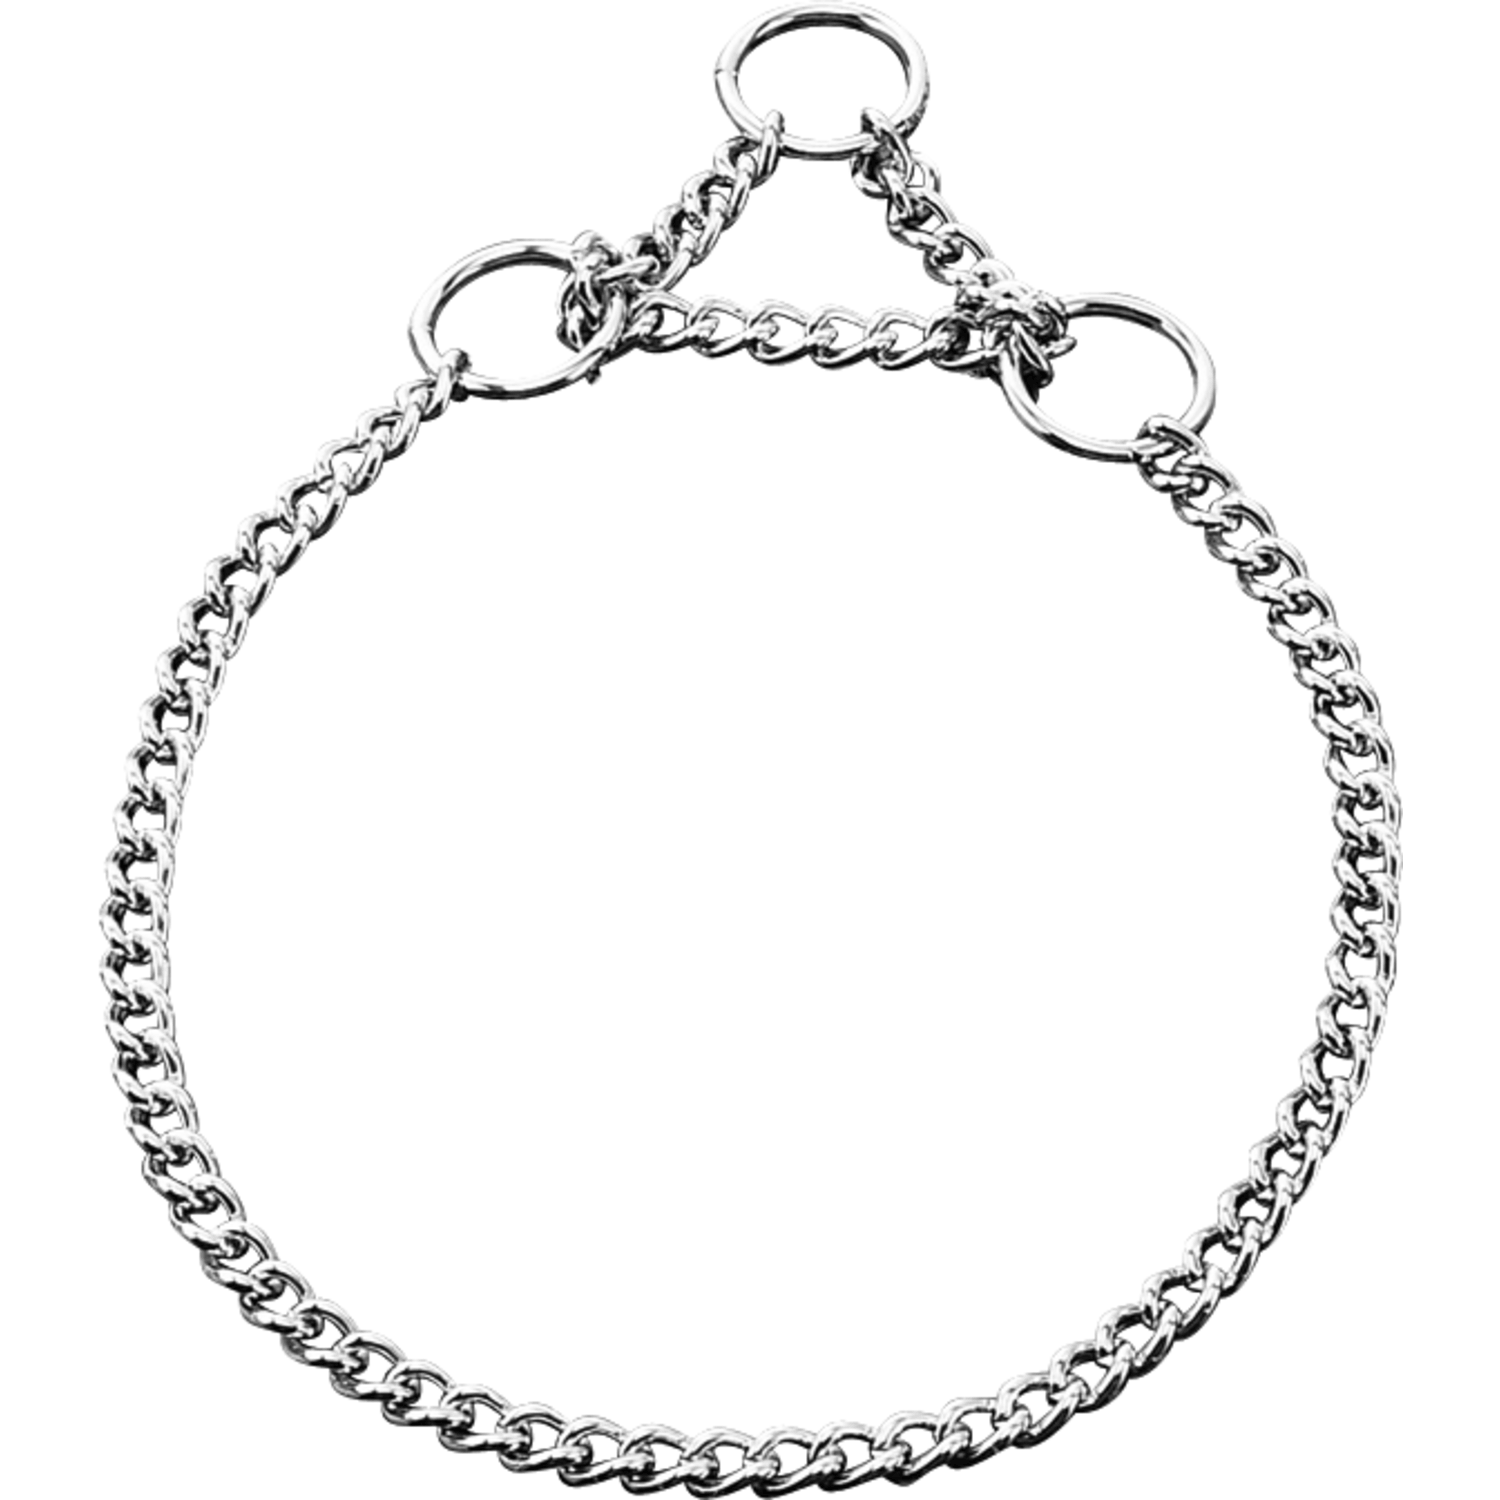 Halskette mit Zugbegrenzung - Stahl verchromt, 1,5 mm | 50781_02.png | 1700898300